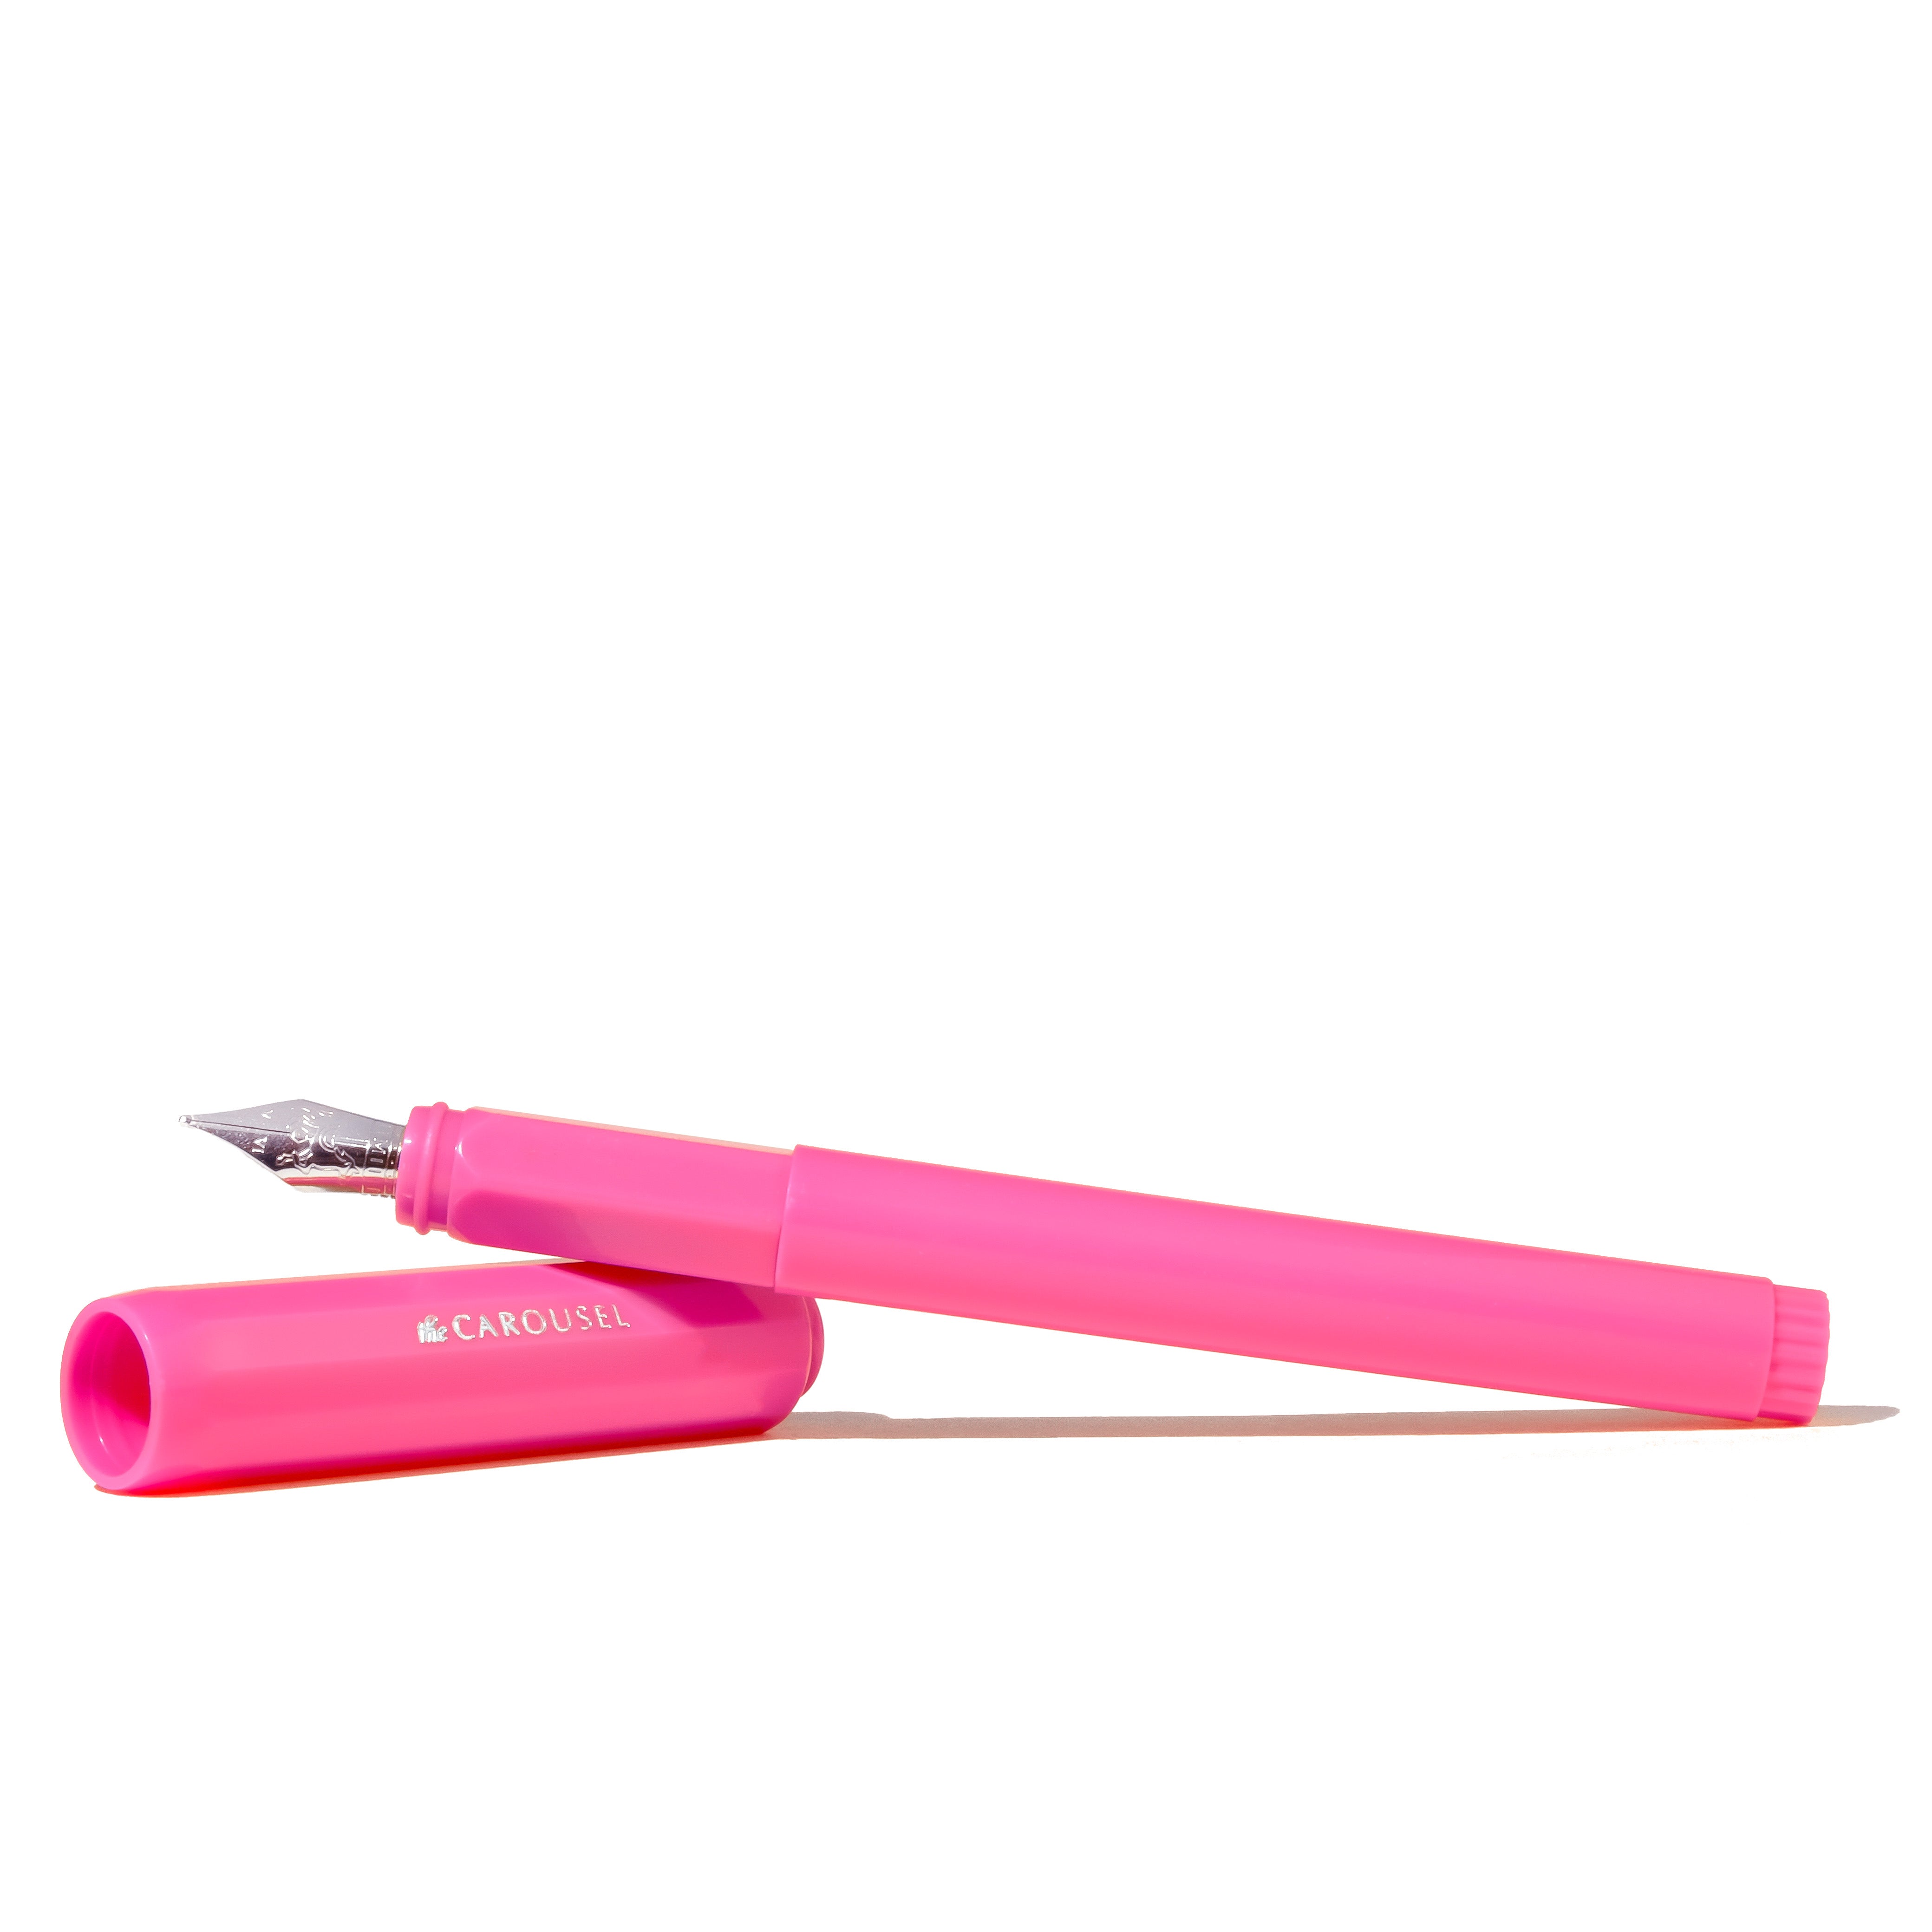 Carousel Pen - Medium - Malibu Blush